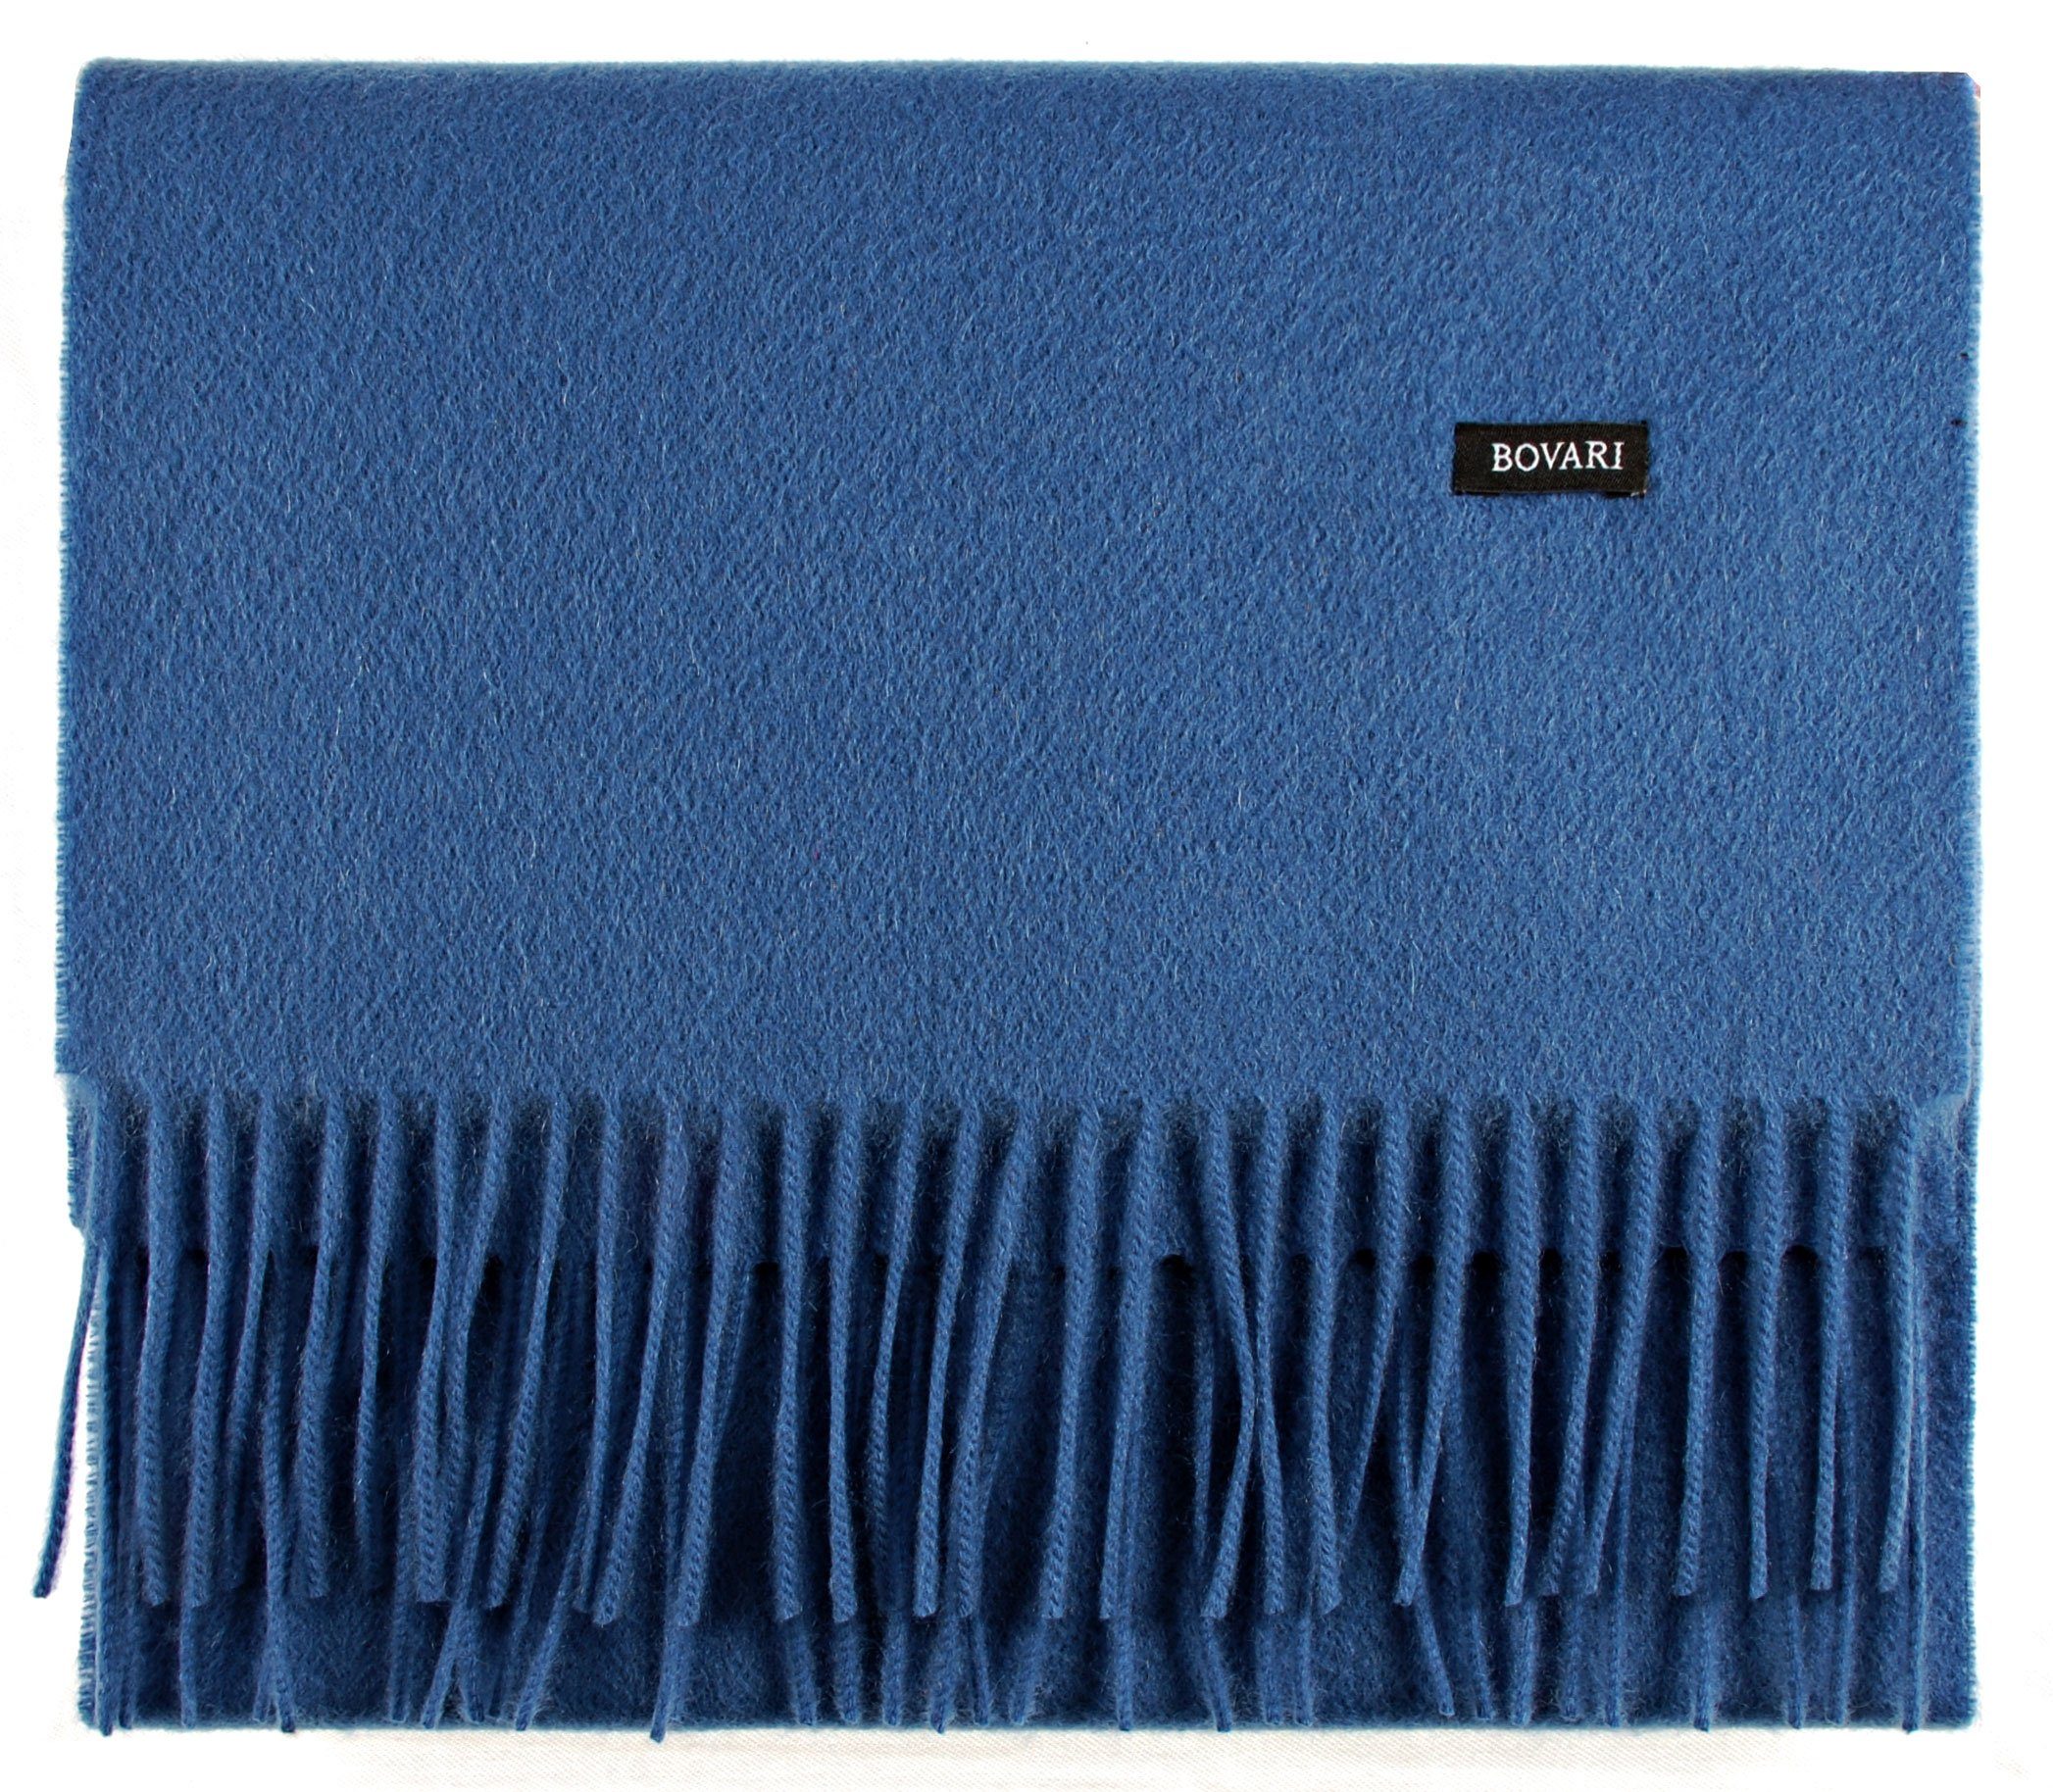 Bovari Kaschmirschal Kaschmir Schal Damen – 100% Kaschmir/Cashmere – Premium Qualität, 180 x 31 cm blau / classic blue | Kaschmirschals